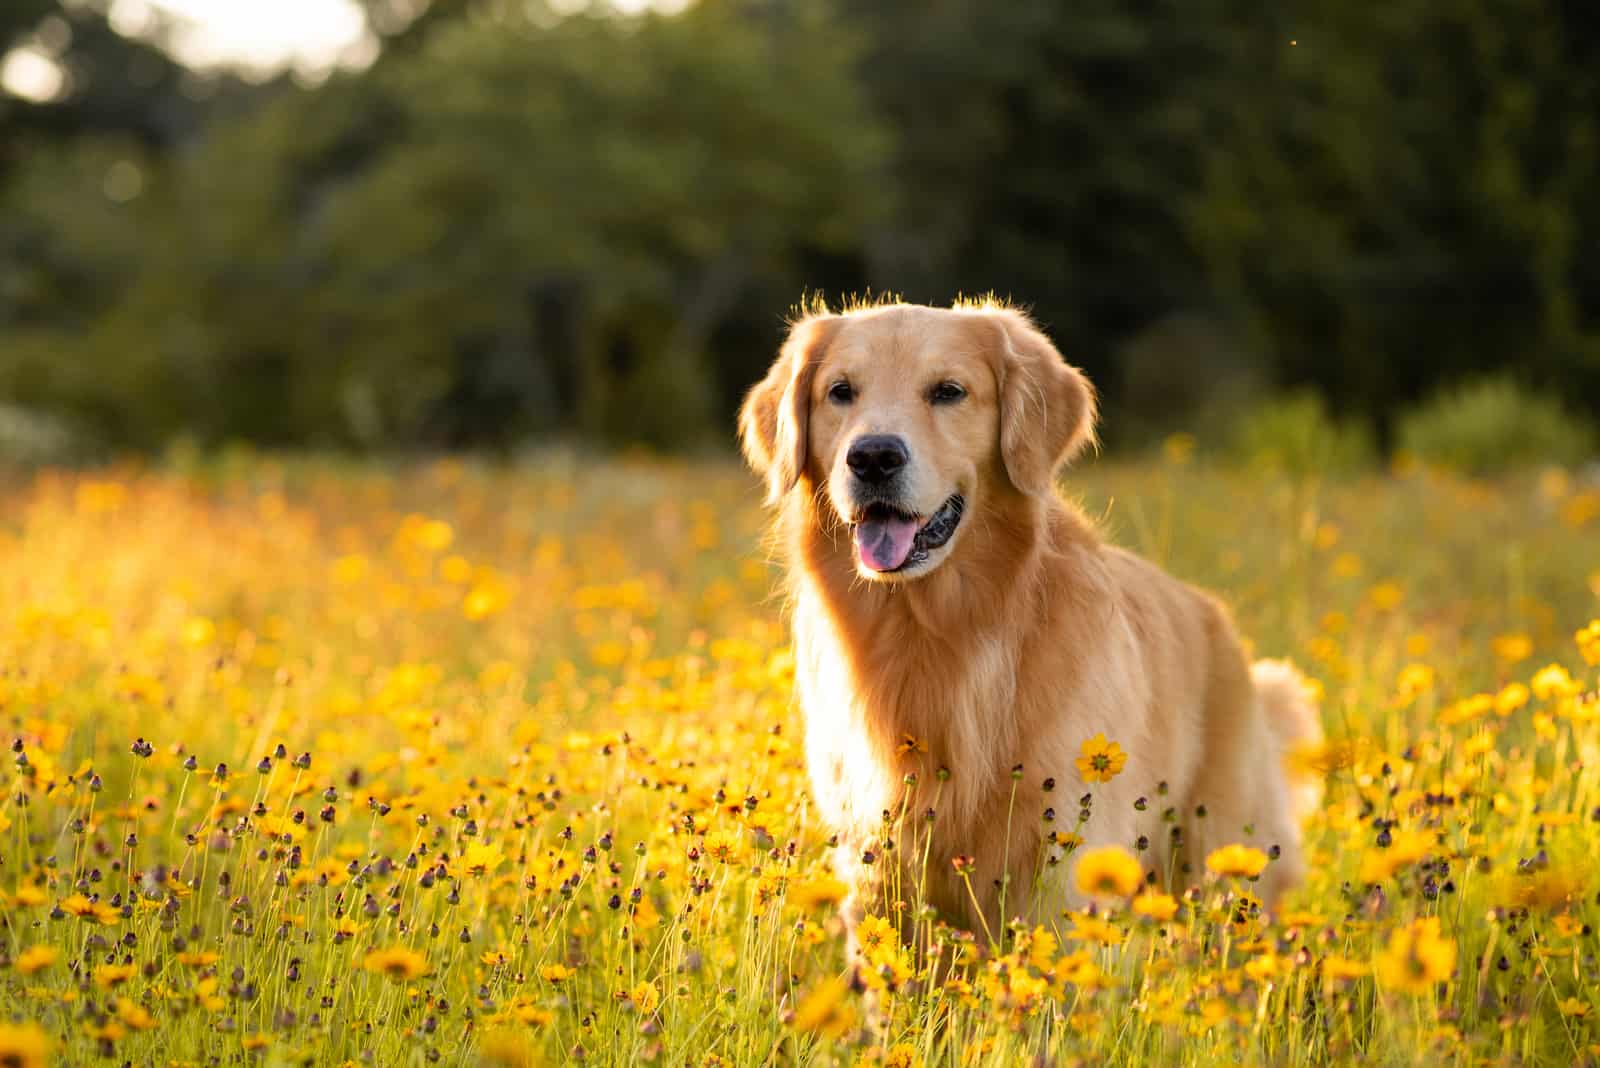 Field Golden Retriever walking in flowers